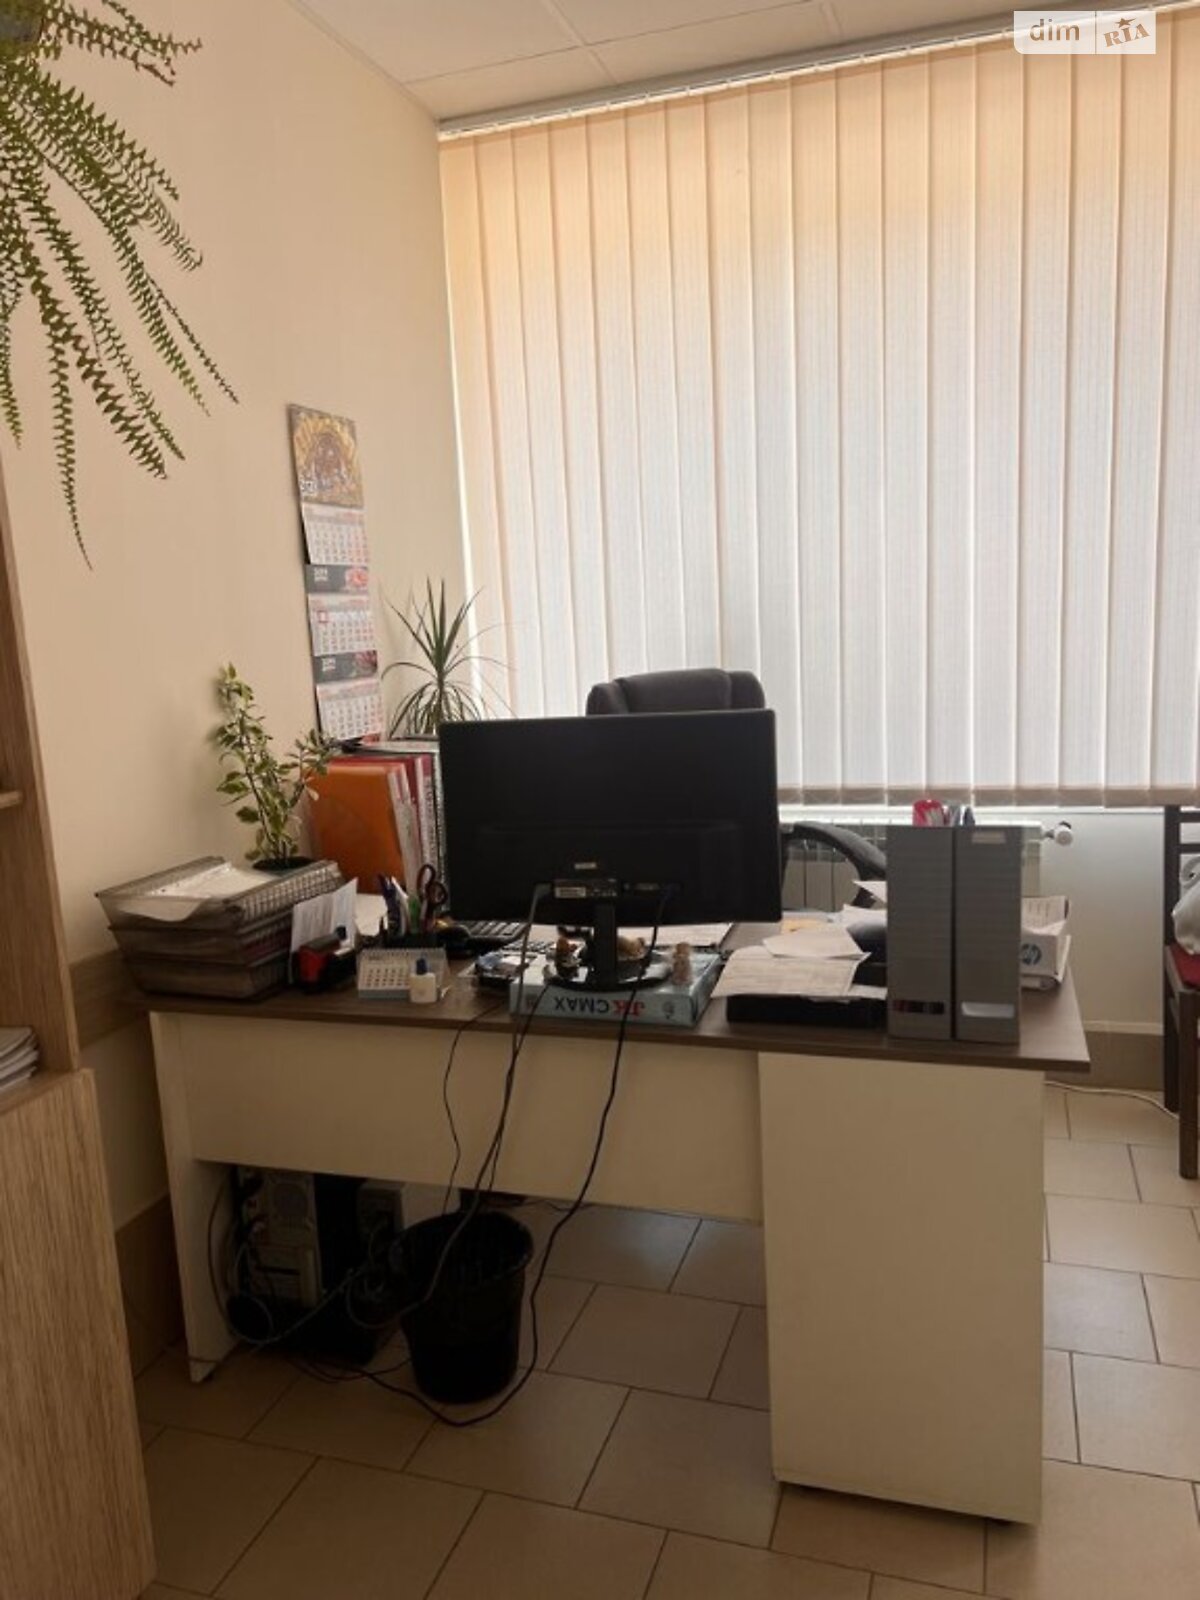 Оренда офісного приміщення в Дніпрі, Калнишевського Петра вулиця, приміщень - 8, поверх - 1 фото 1